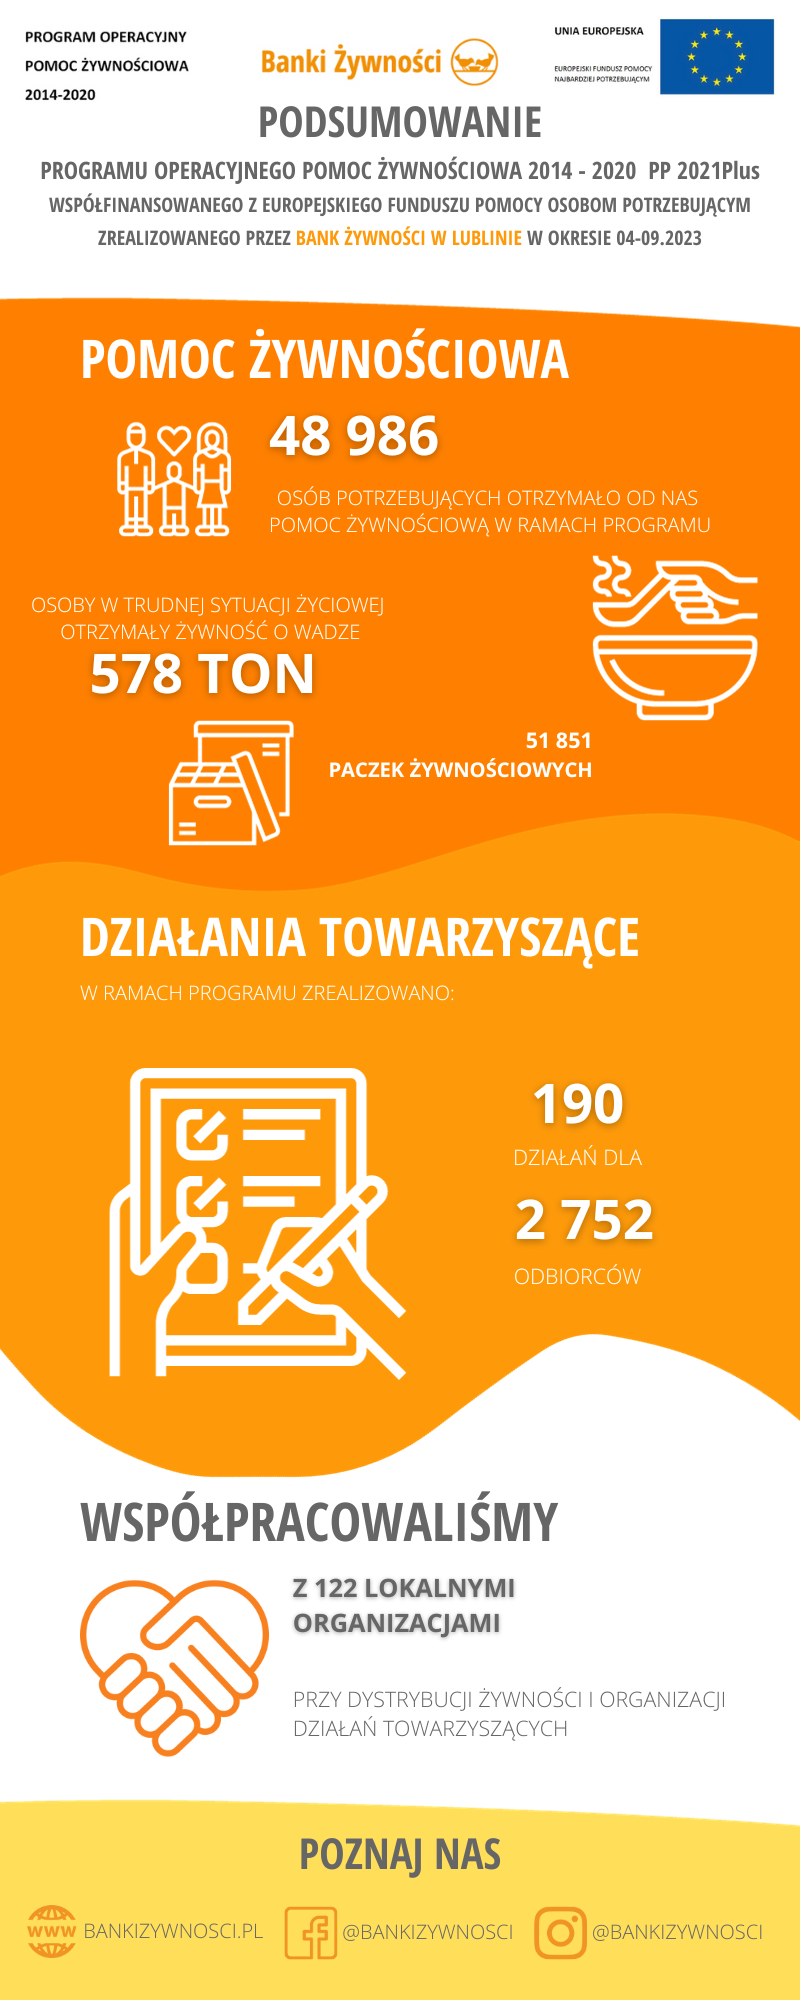 POPZ21Plus Lublin infografika podsumowujaca DZ i DT 1